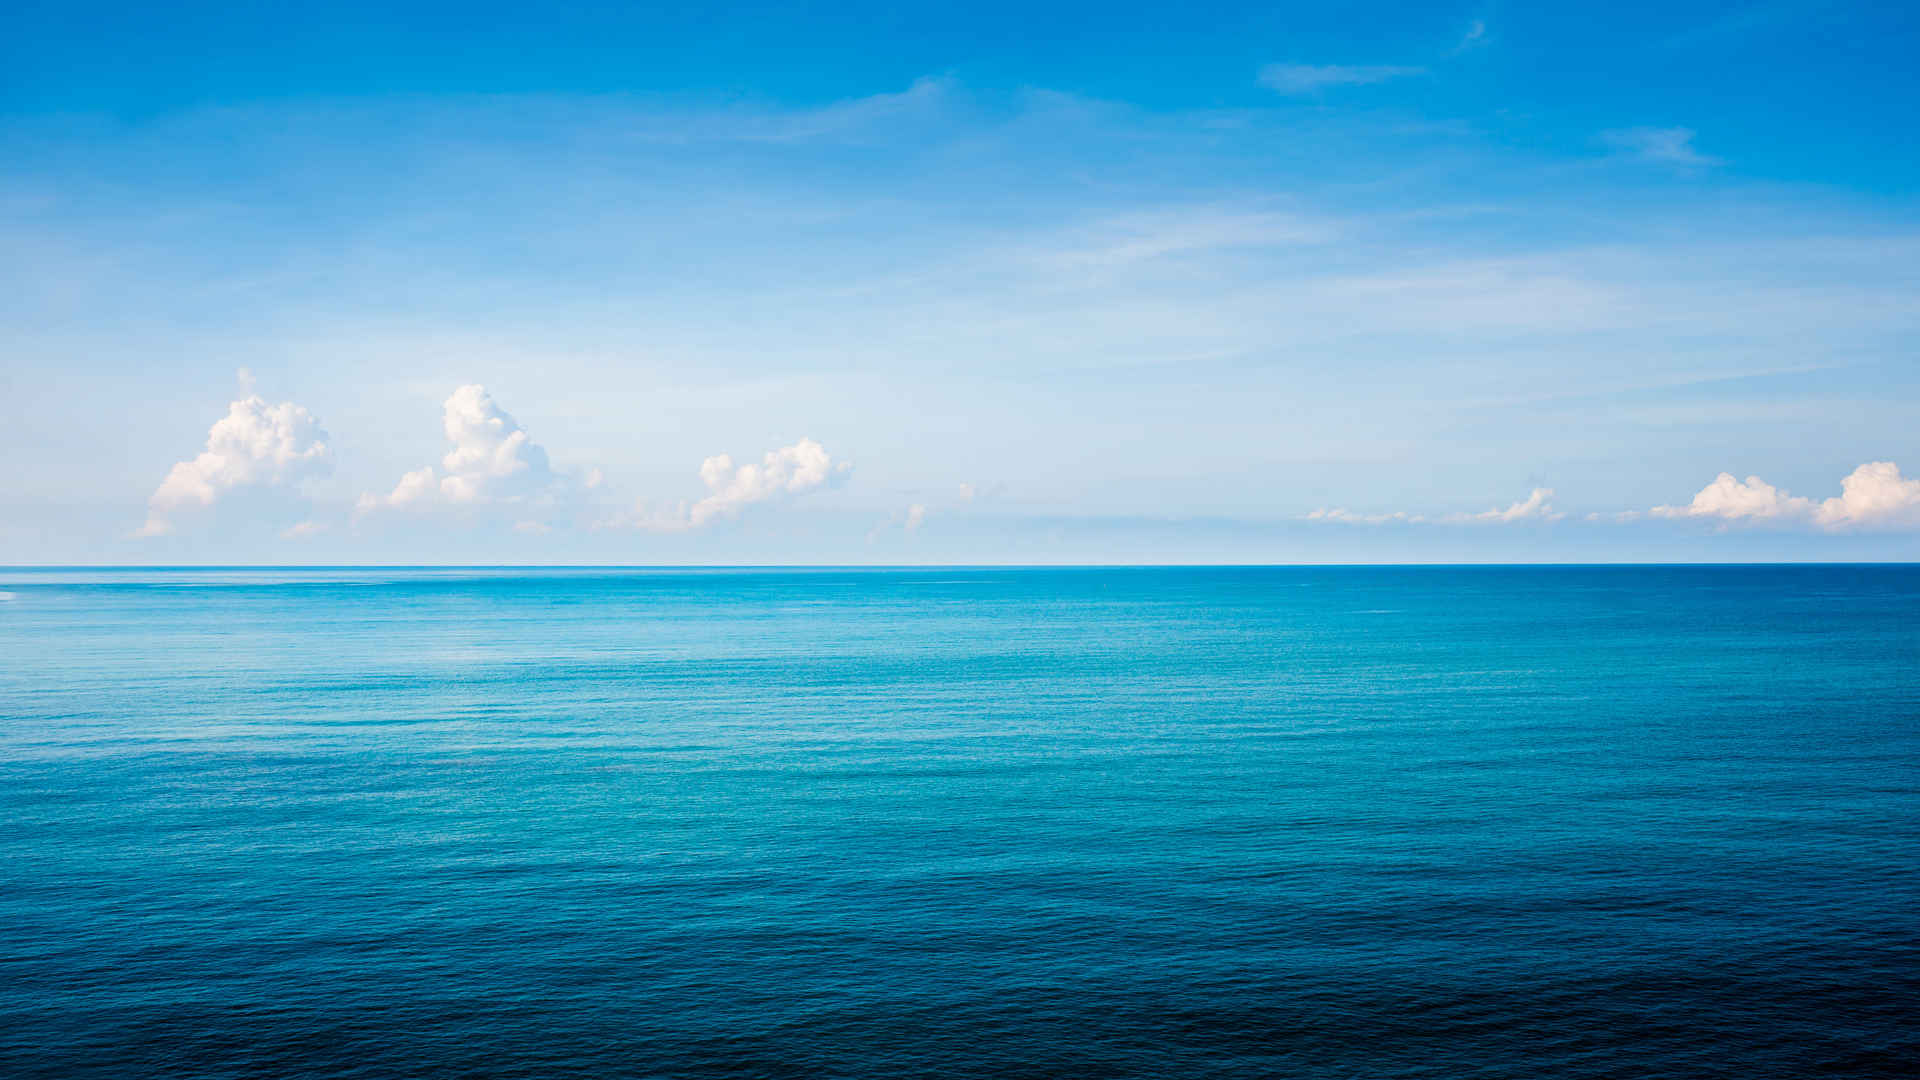 一望无际的大海 碧海蓝天 水天一线 4k风景壁纸